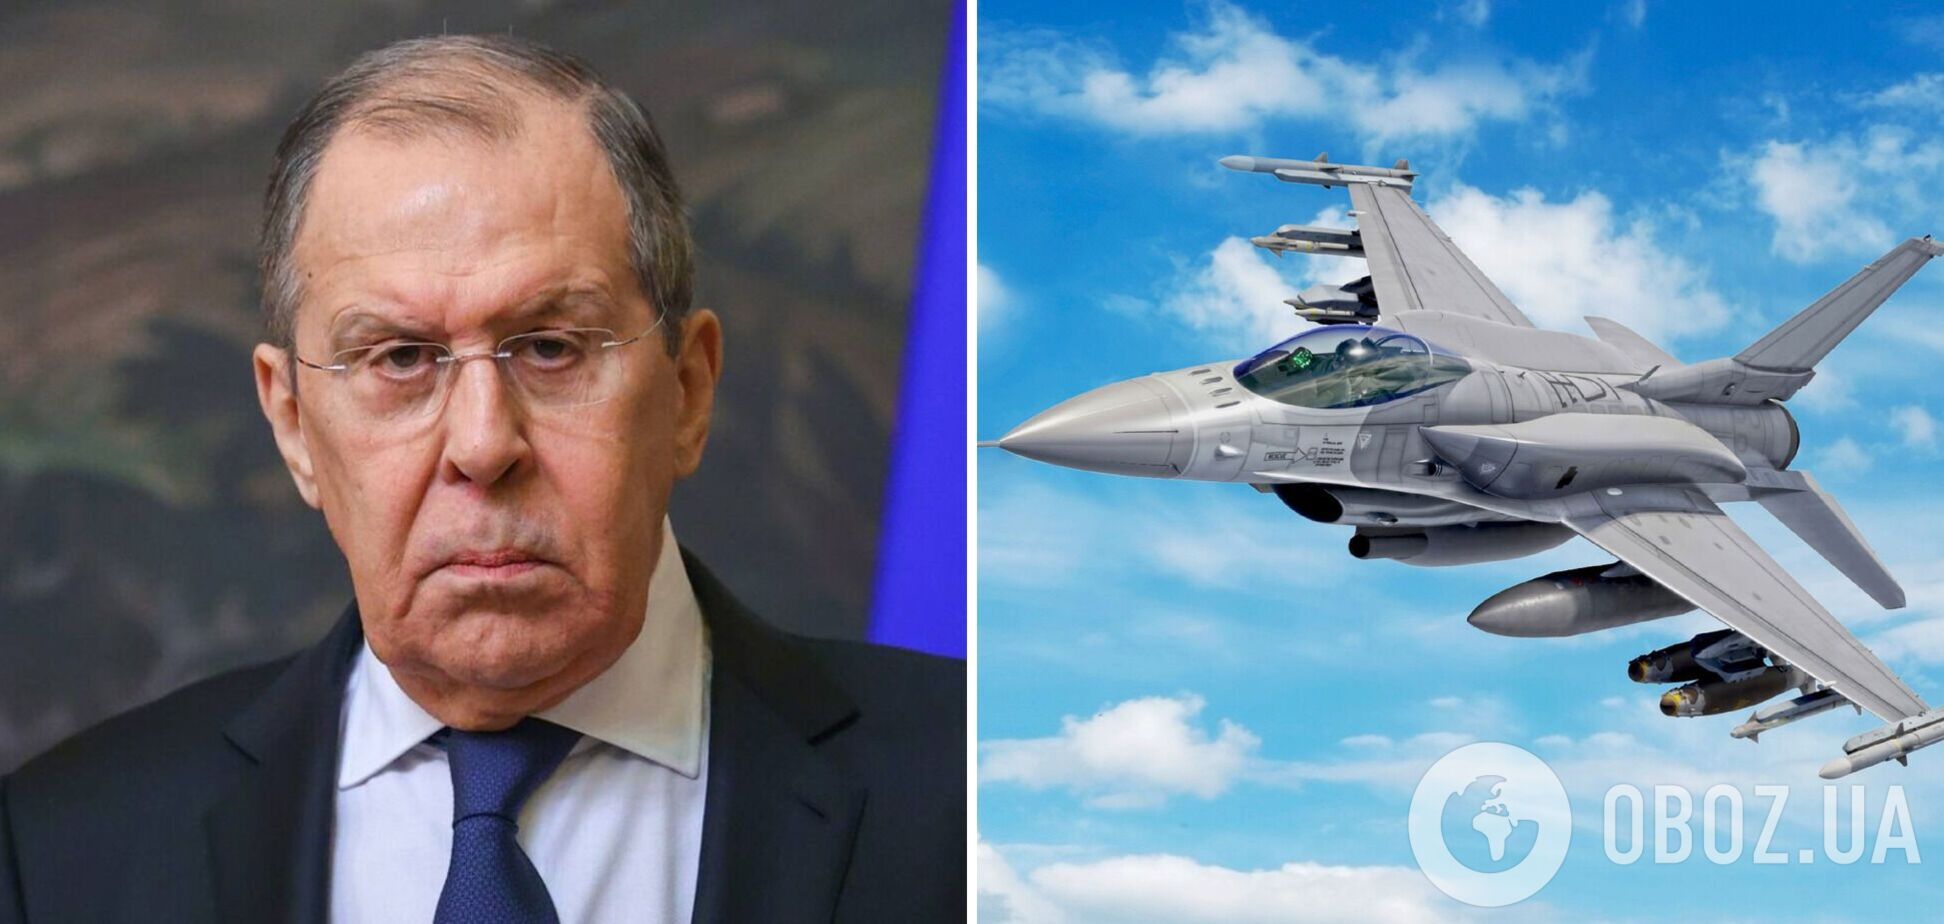 'Угроза в ядерной сфере': Лавров устроил истерику из-за F-16 для Украины и заговорил о 'катастрофических последствиях'